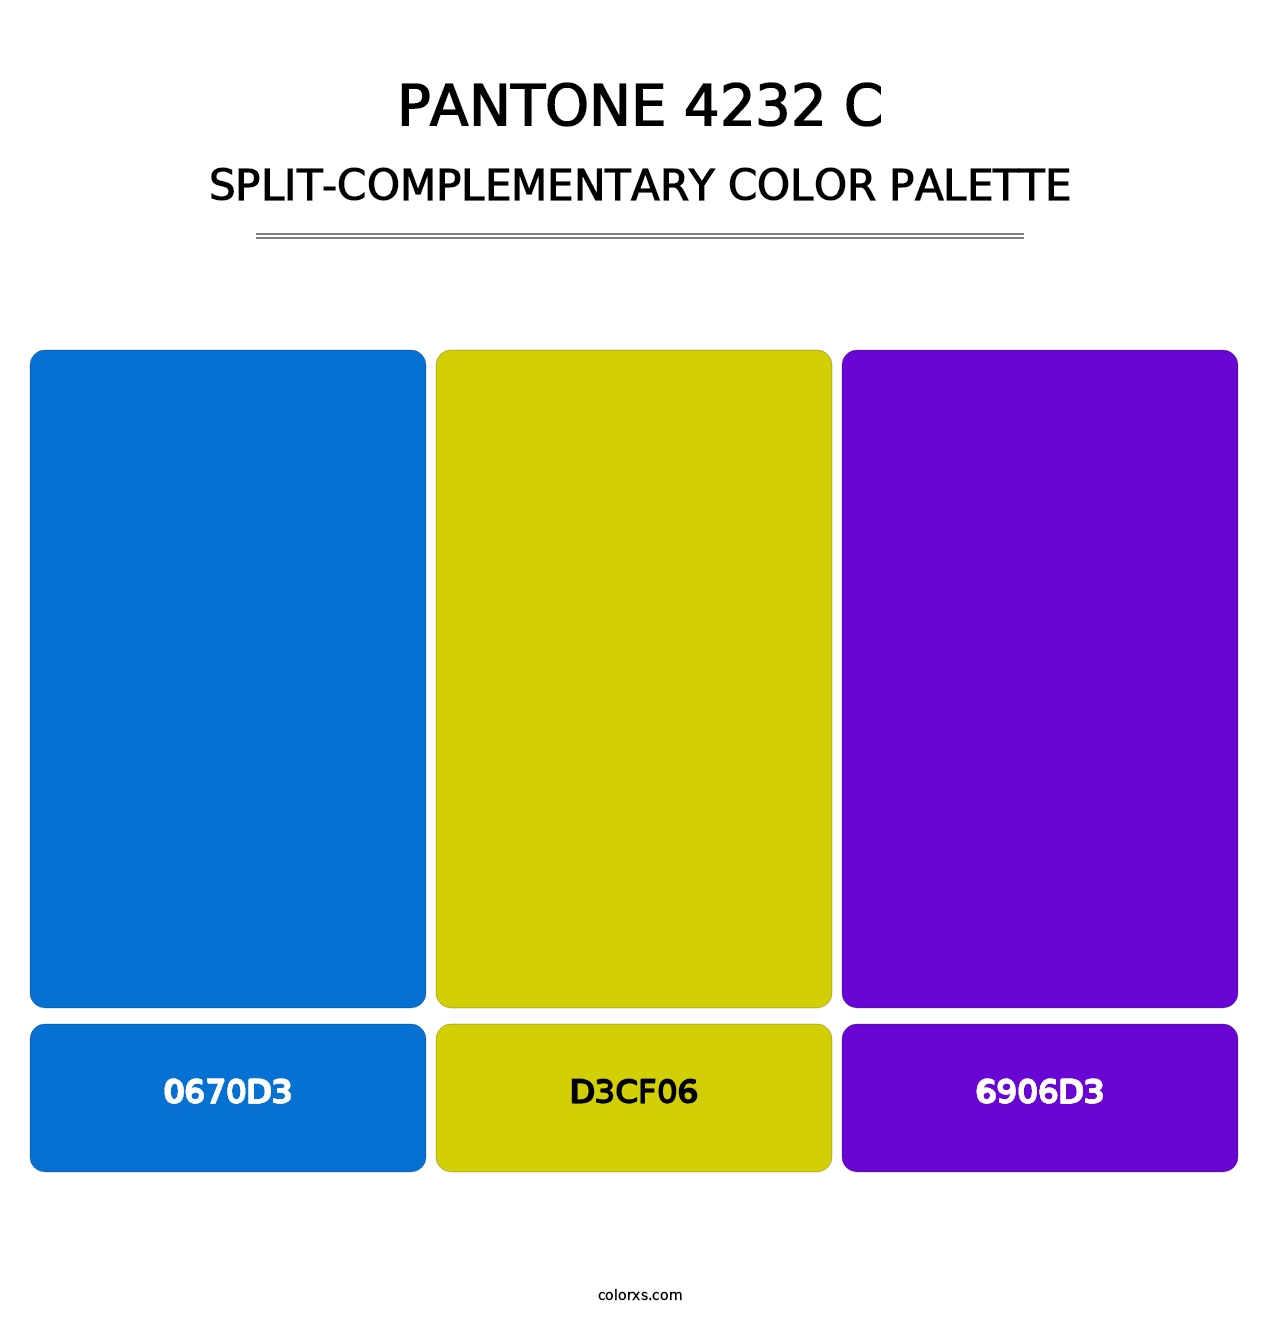 PANTONE 4232 C - Split-Complementary Color Palette